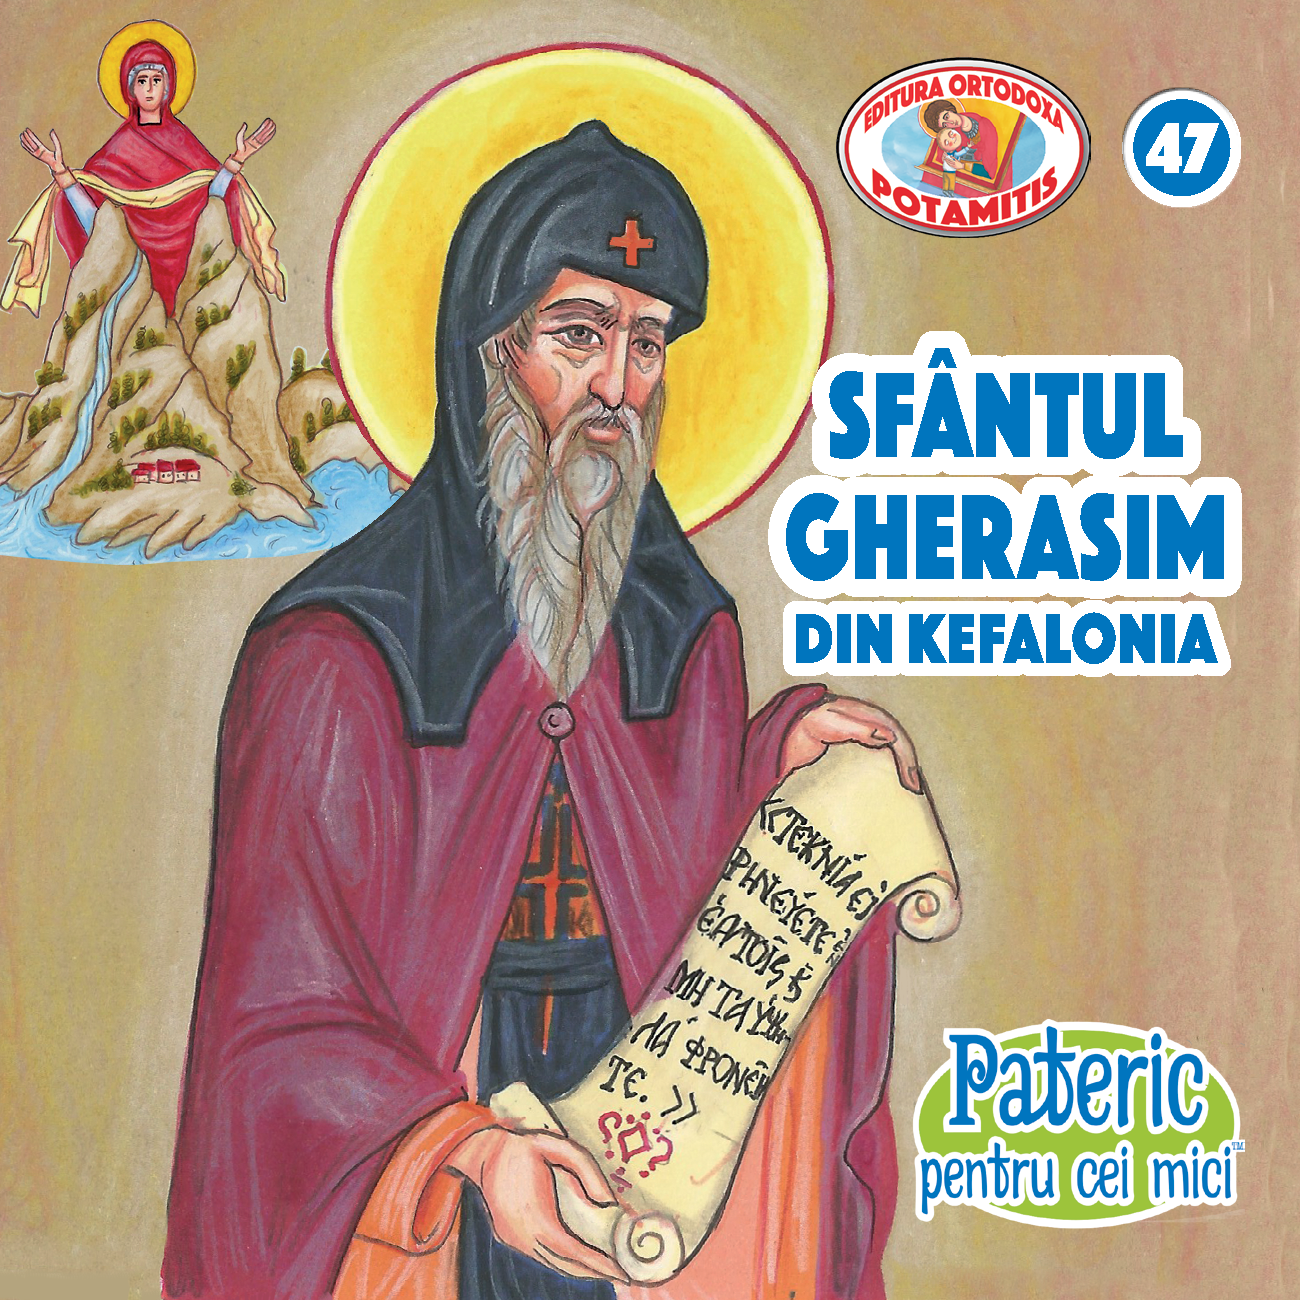 47 - Pateric pentru cei mici - Sfântul Gherasim din Kefalonia